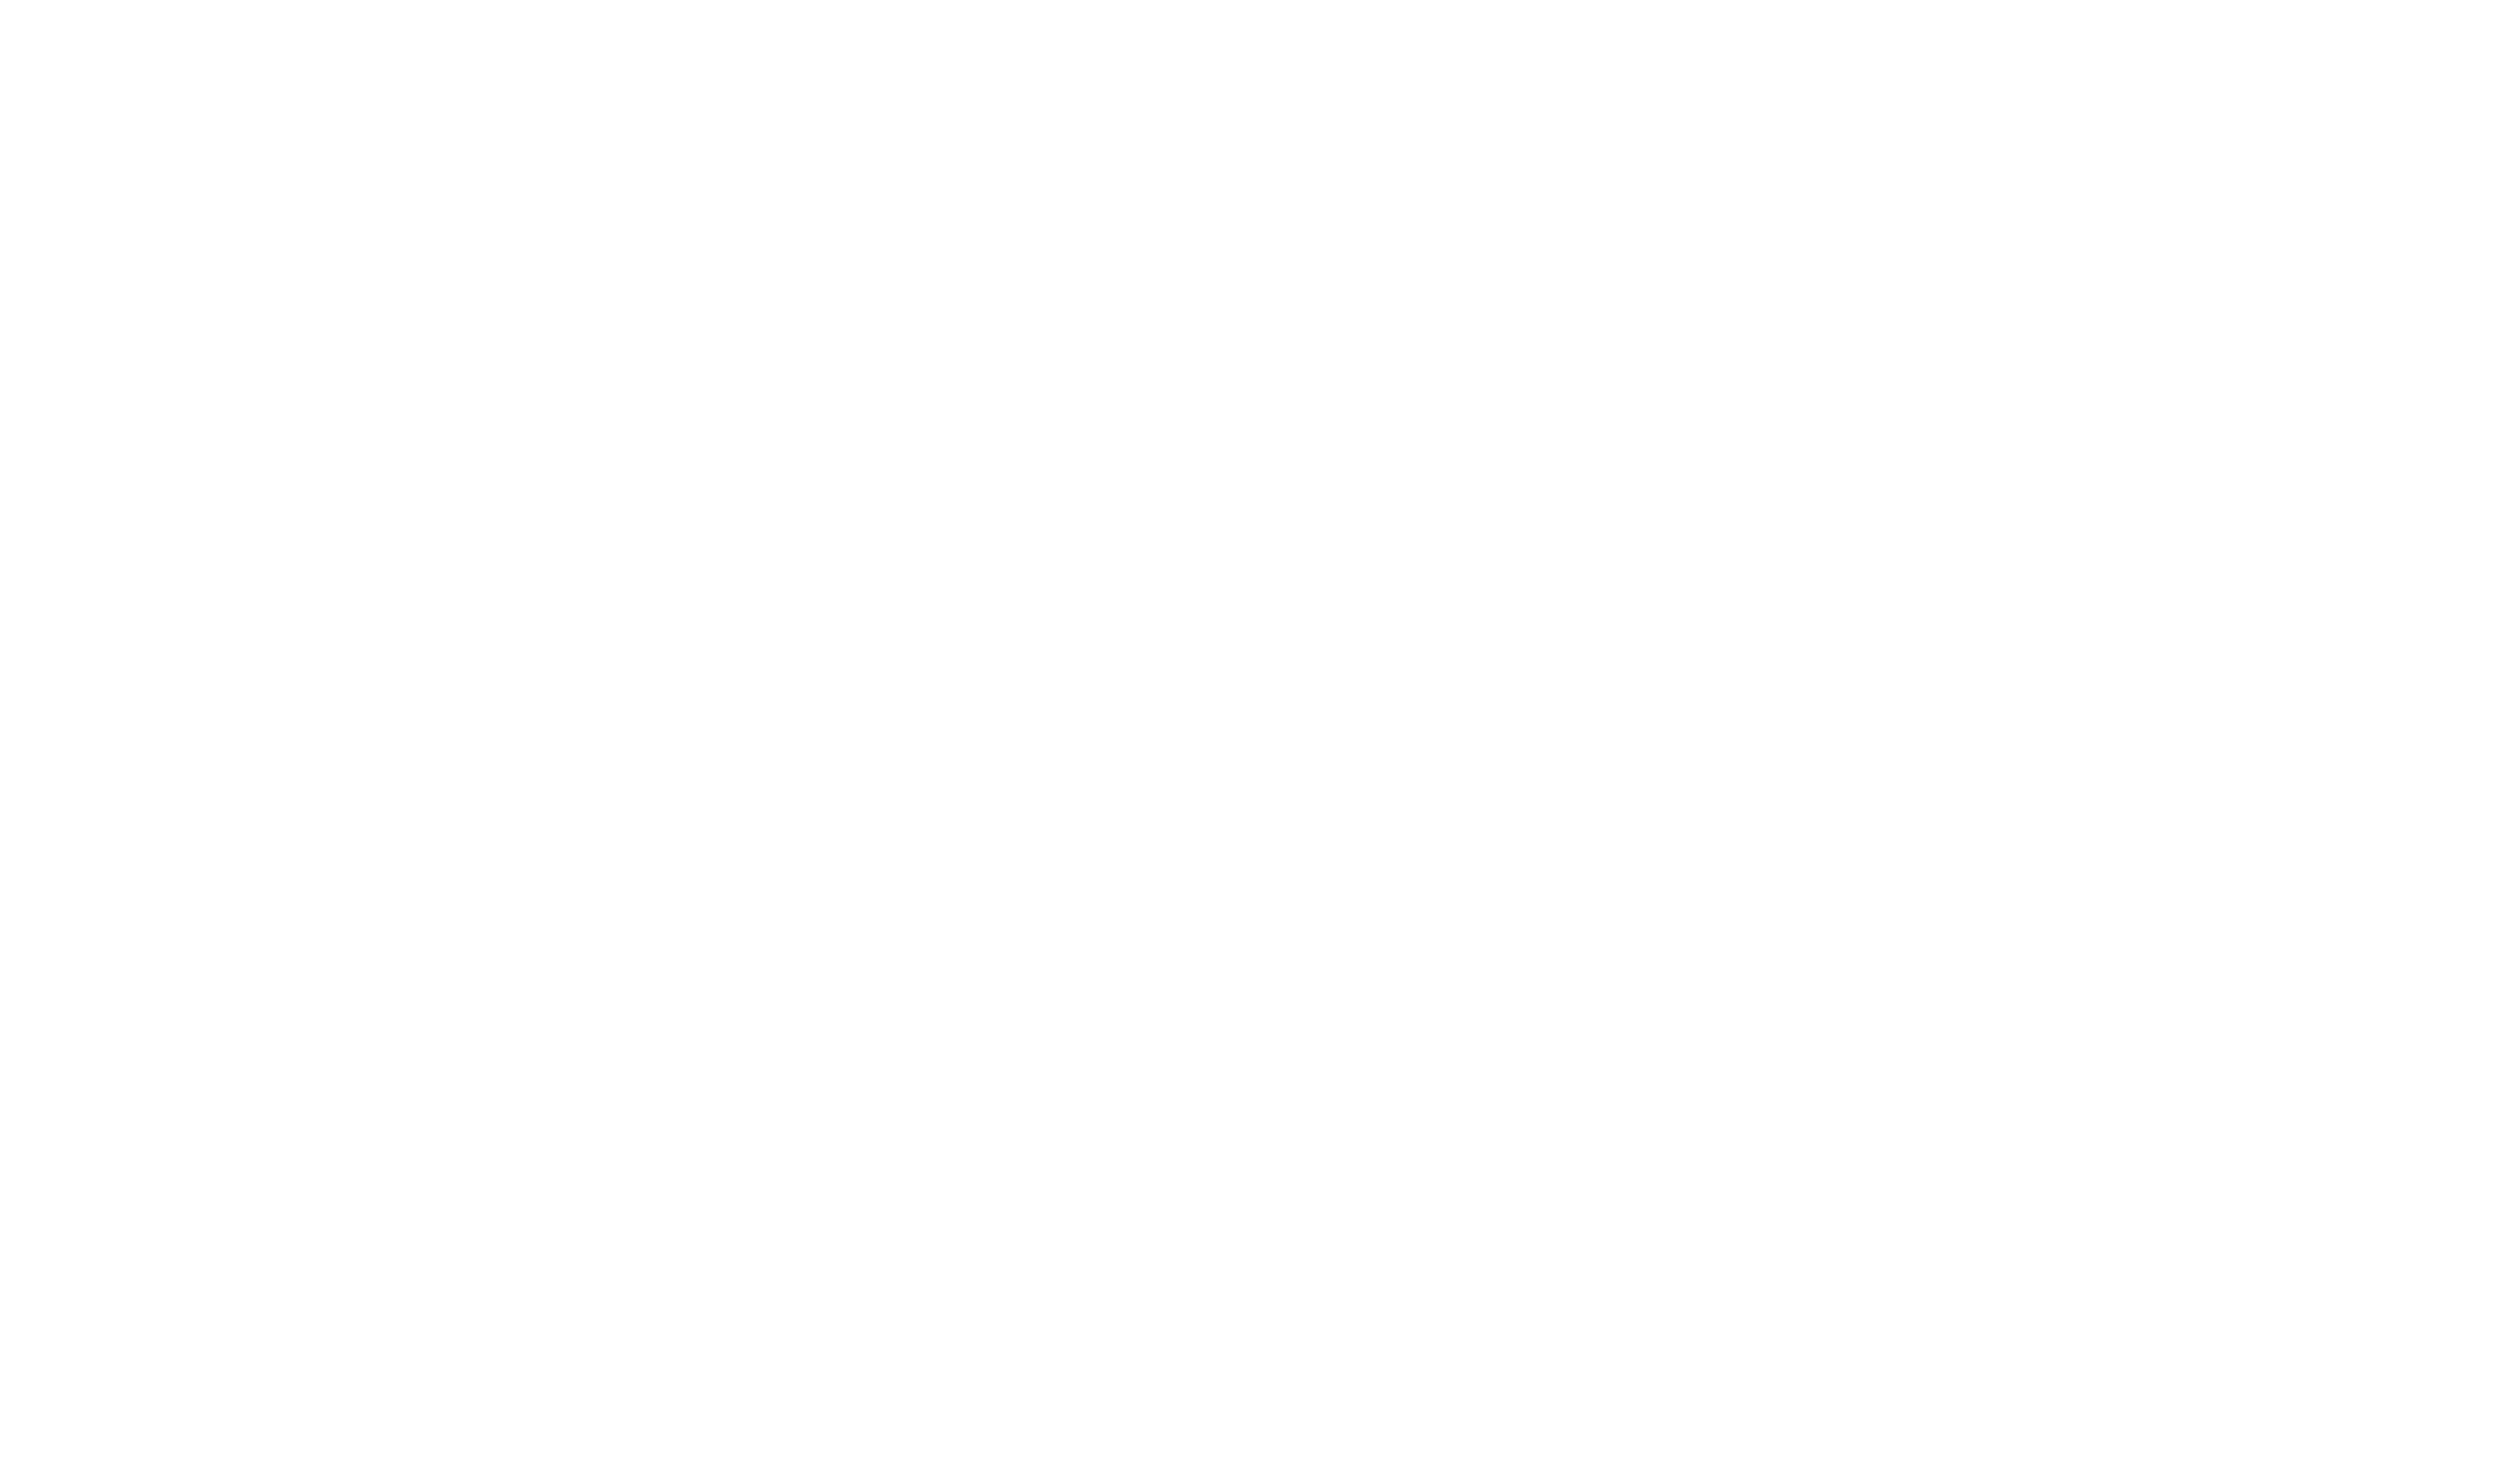 CPAC 2022 Texas